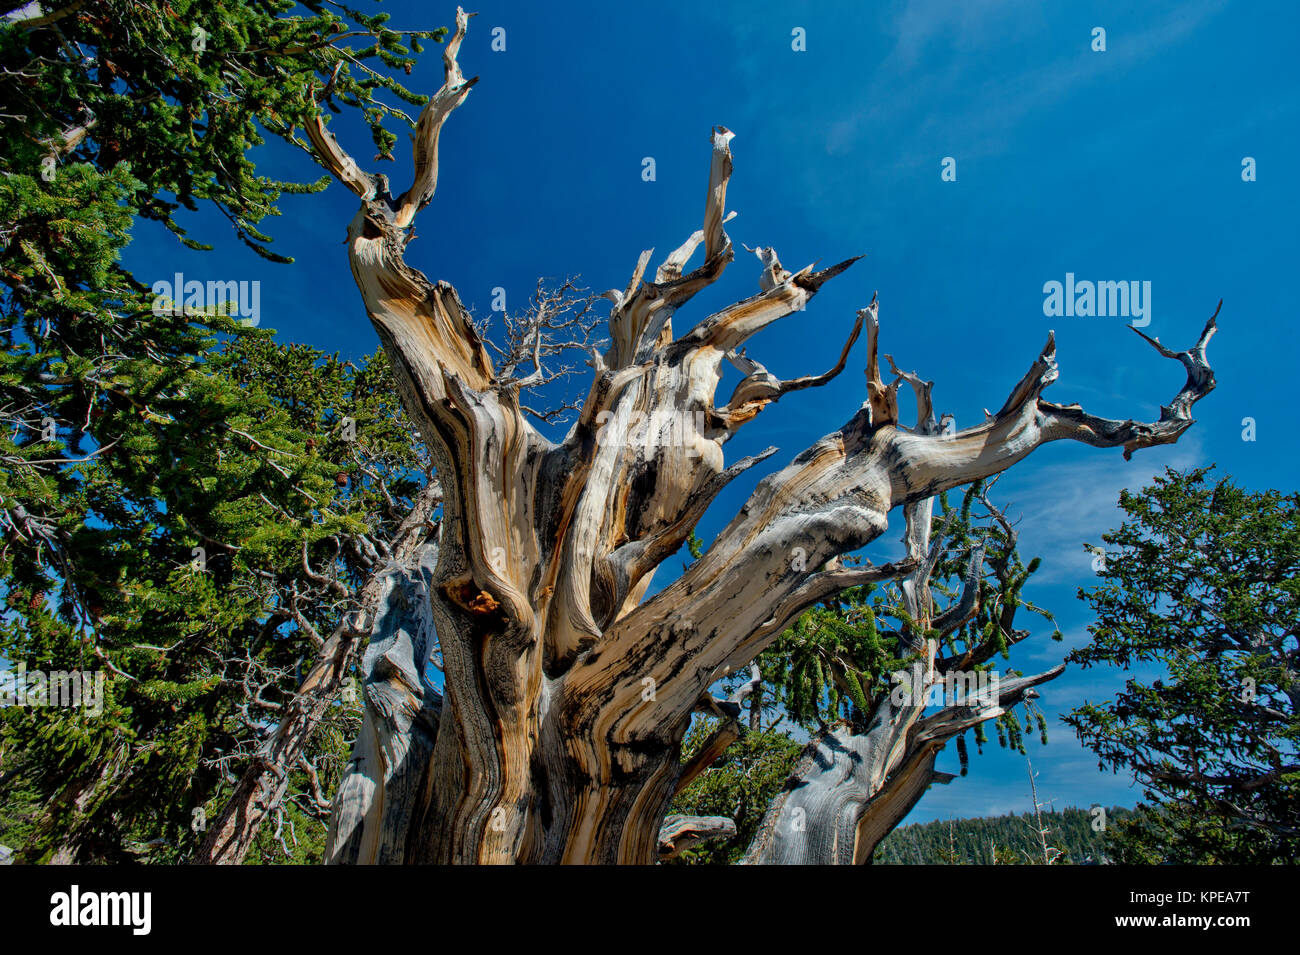 Bristlecone Pine (Pinus longaeva) im Great Basin National Park, Nevada. Älteste bekannte nicht klonalen Organismus auf der Erde. Stockfoto